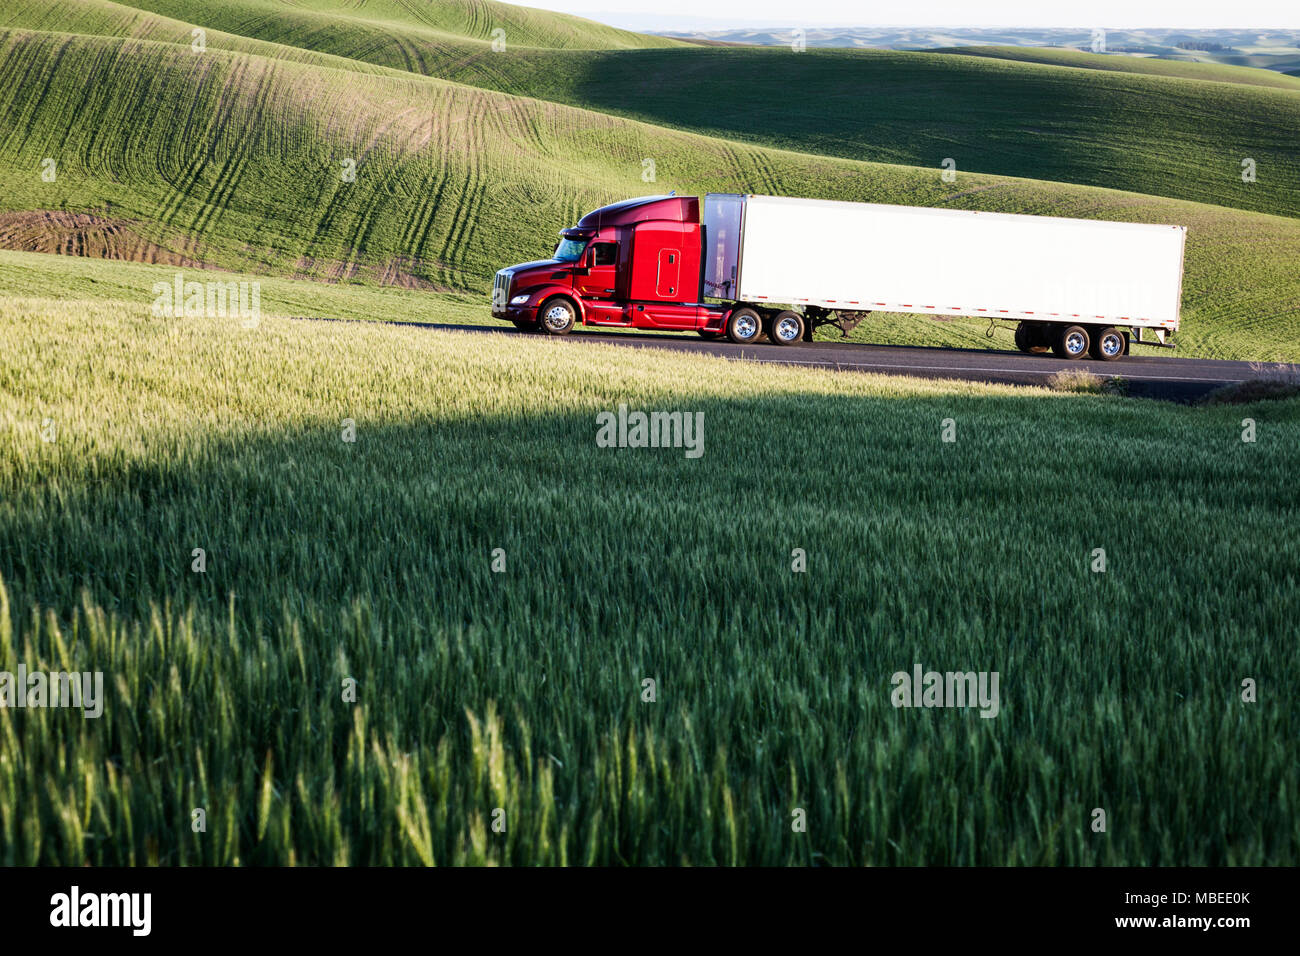 Bien que la conduite de camions commerciaux de champs de blé l'Est de Washington, USA au coucher du soleil. Banque D'Images